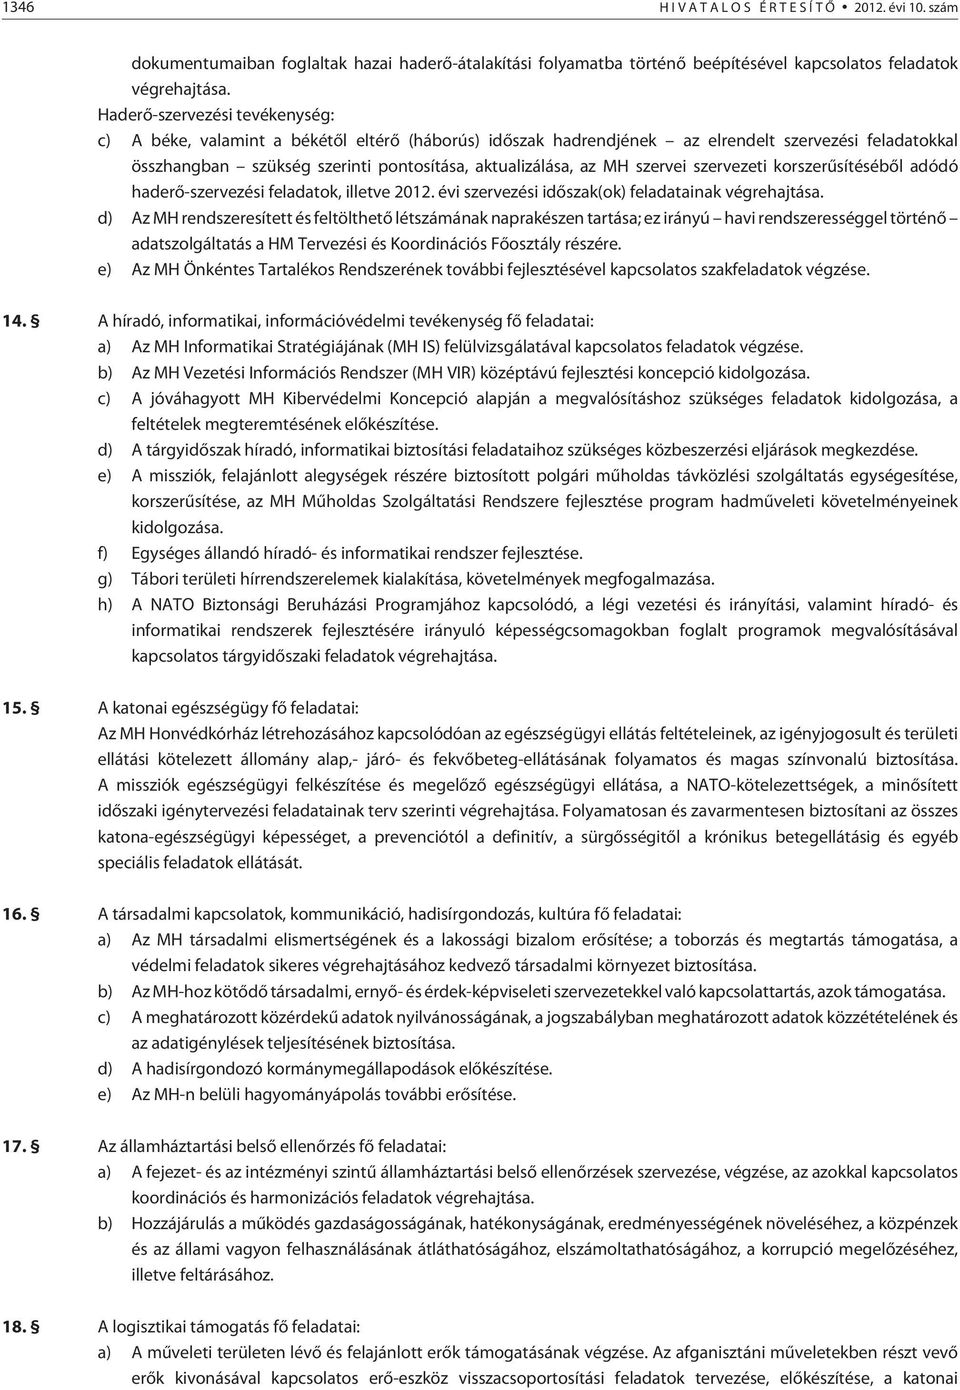 szervei szervezeti korszerûsítésébõl adódó haderõ-szervezési feladatok, illetve 2012. évi szervezési idõszak(ok) feladatainak végrehajtása.